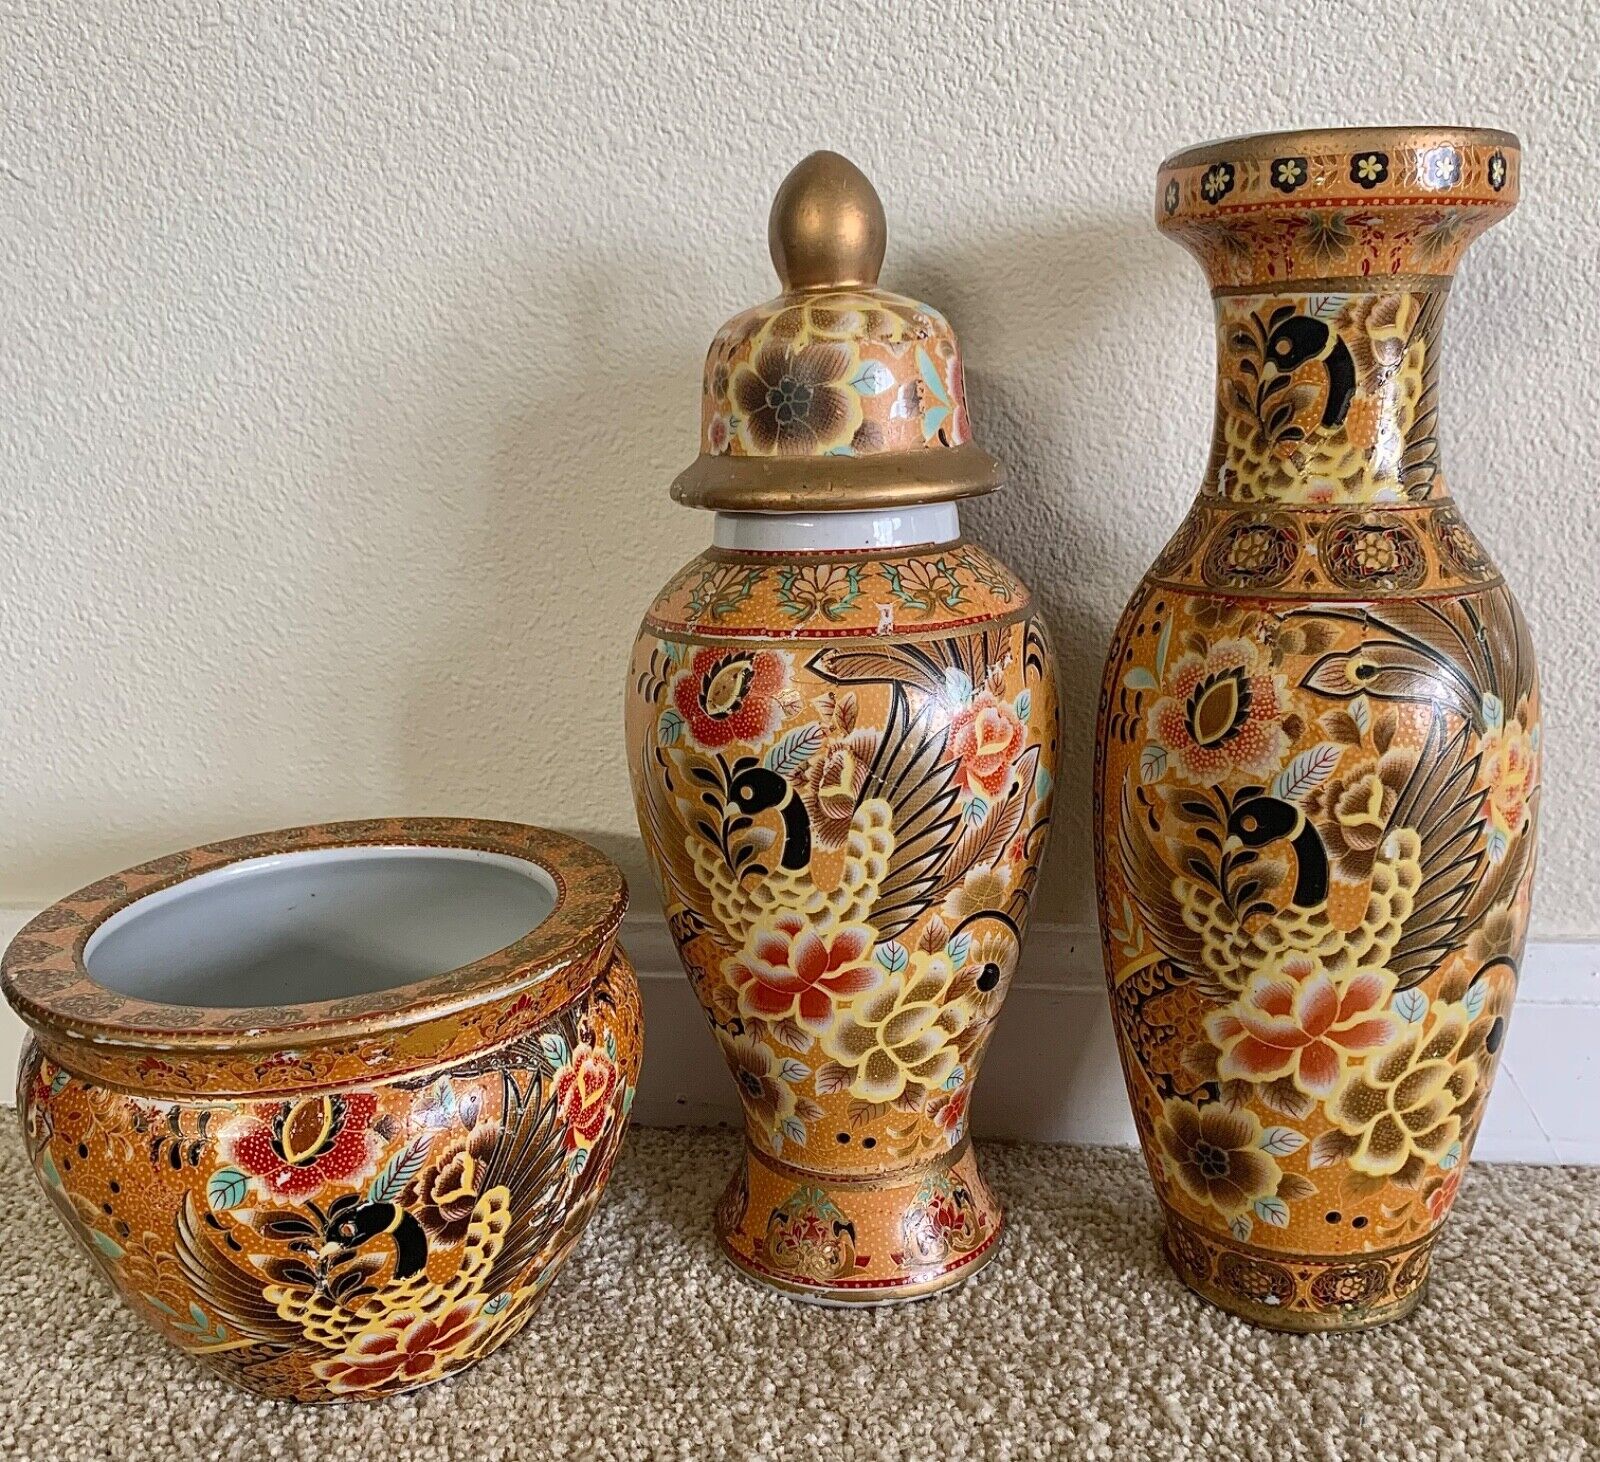 Antique Chinese Satsuma Style Porcelain Vase, Urn and Fish Bowl/Planter set